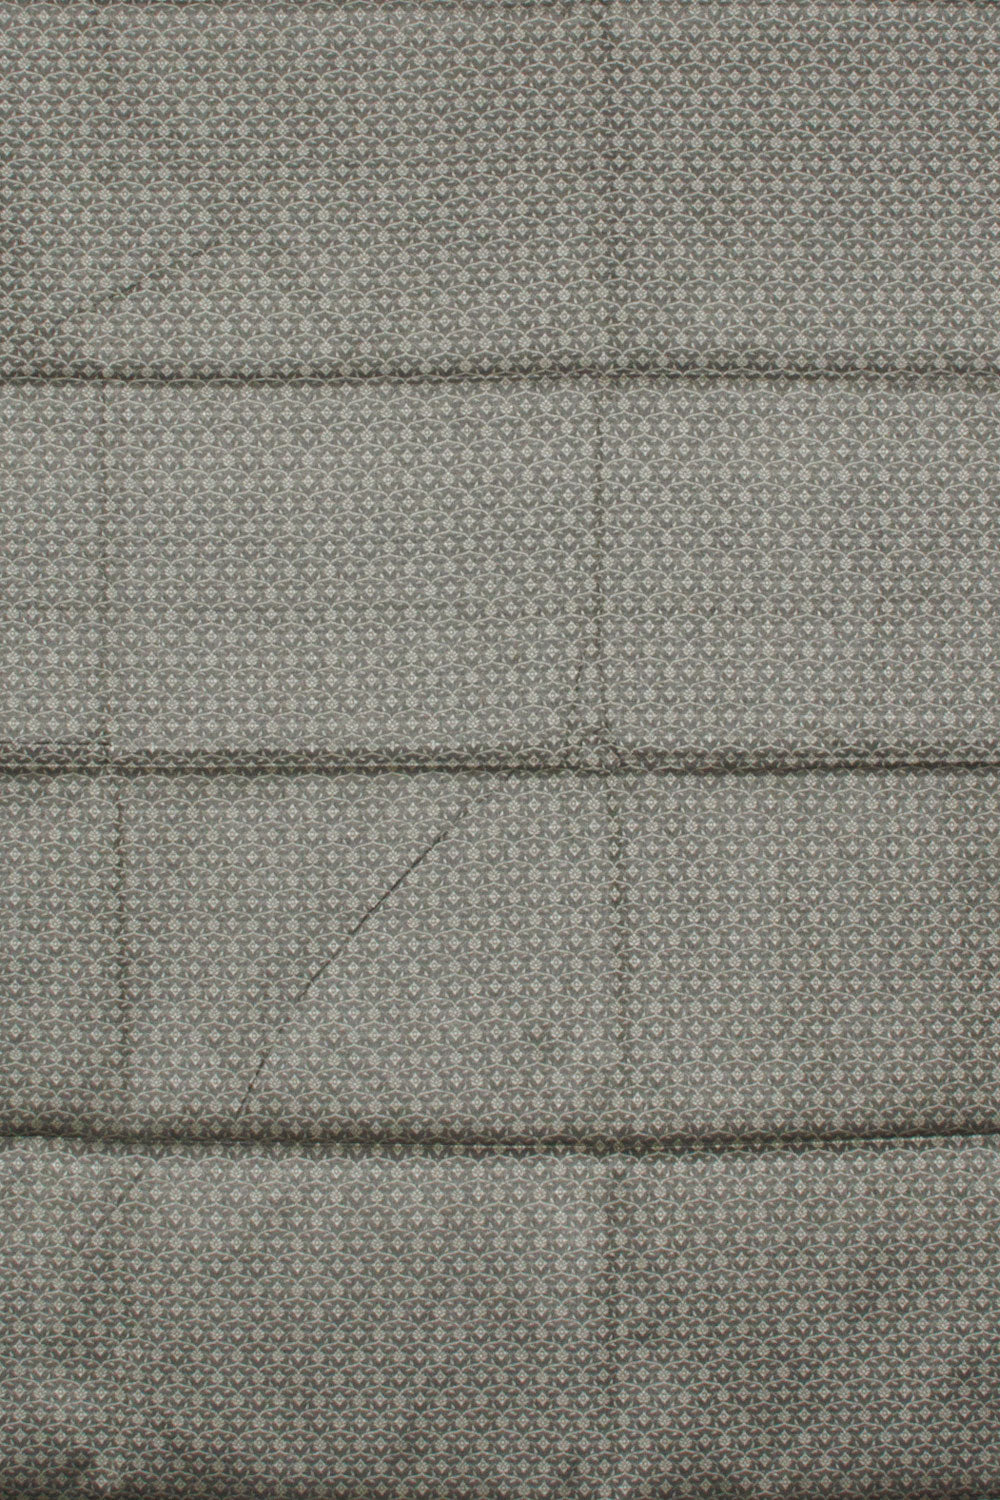 Charcoal Grey Banarasi Cotton Salwar Suit Material 10061165